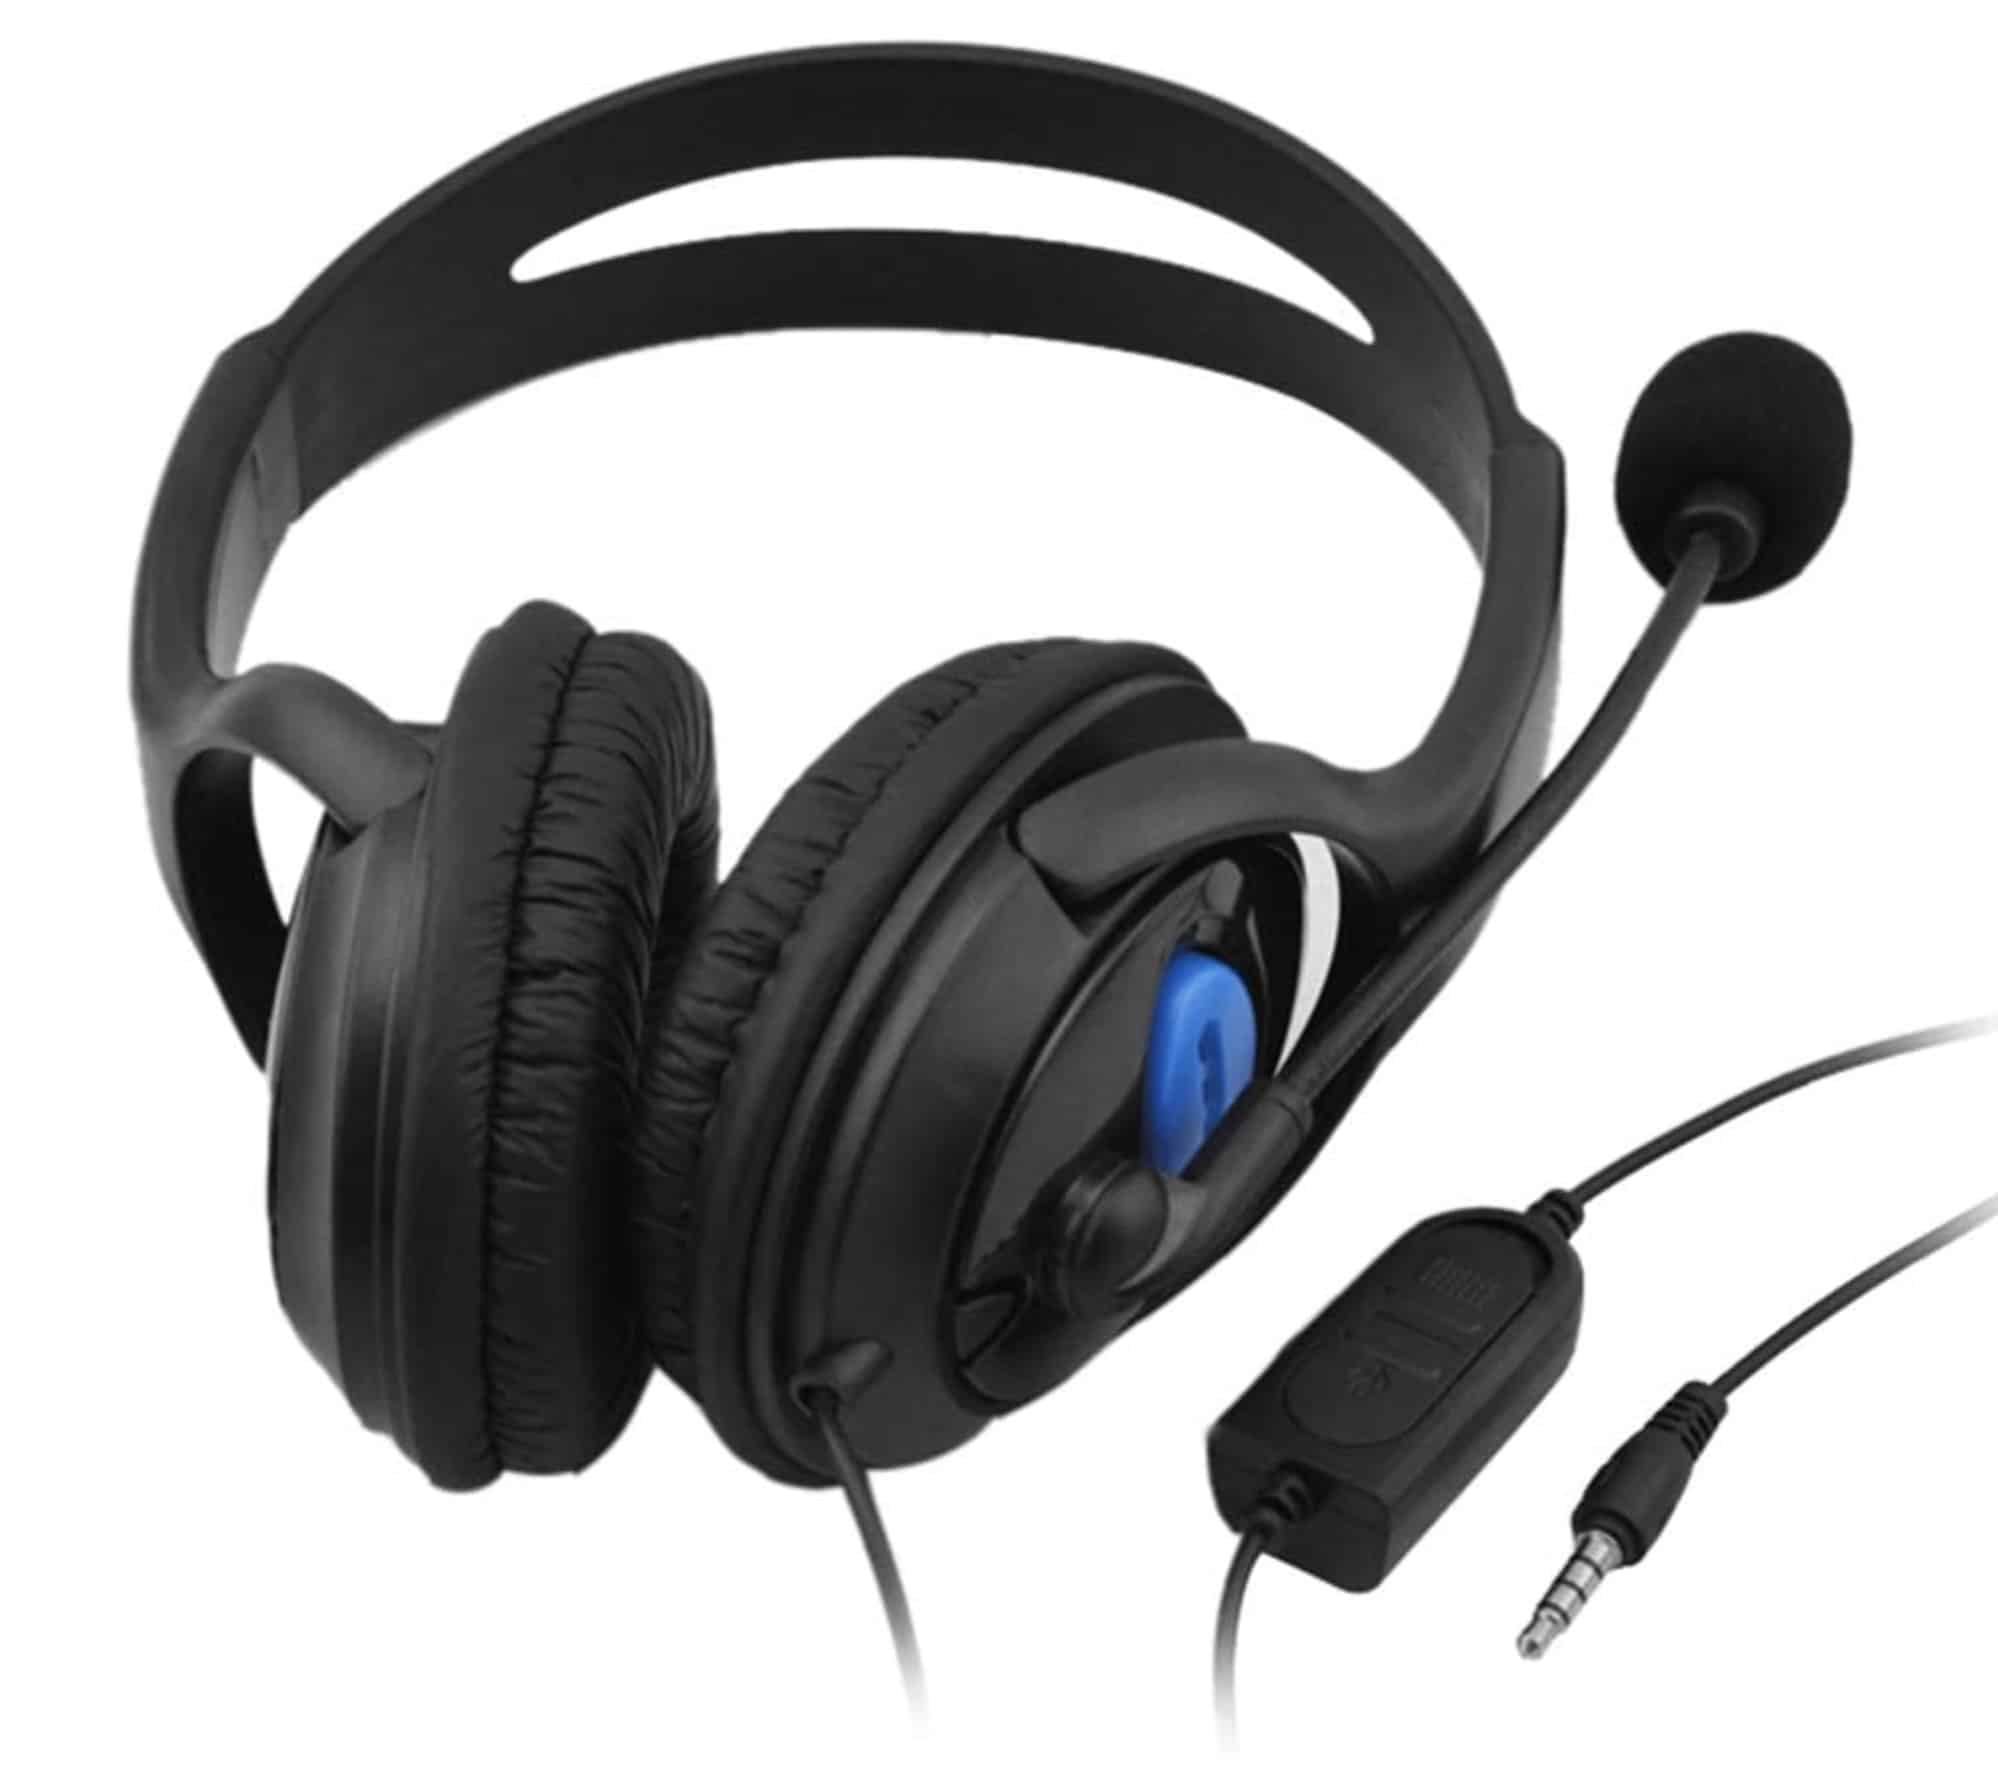 Pedkit Gaming-Headset für nur 8,99 Euro bei Amazon